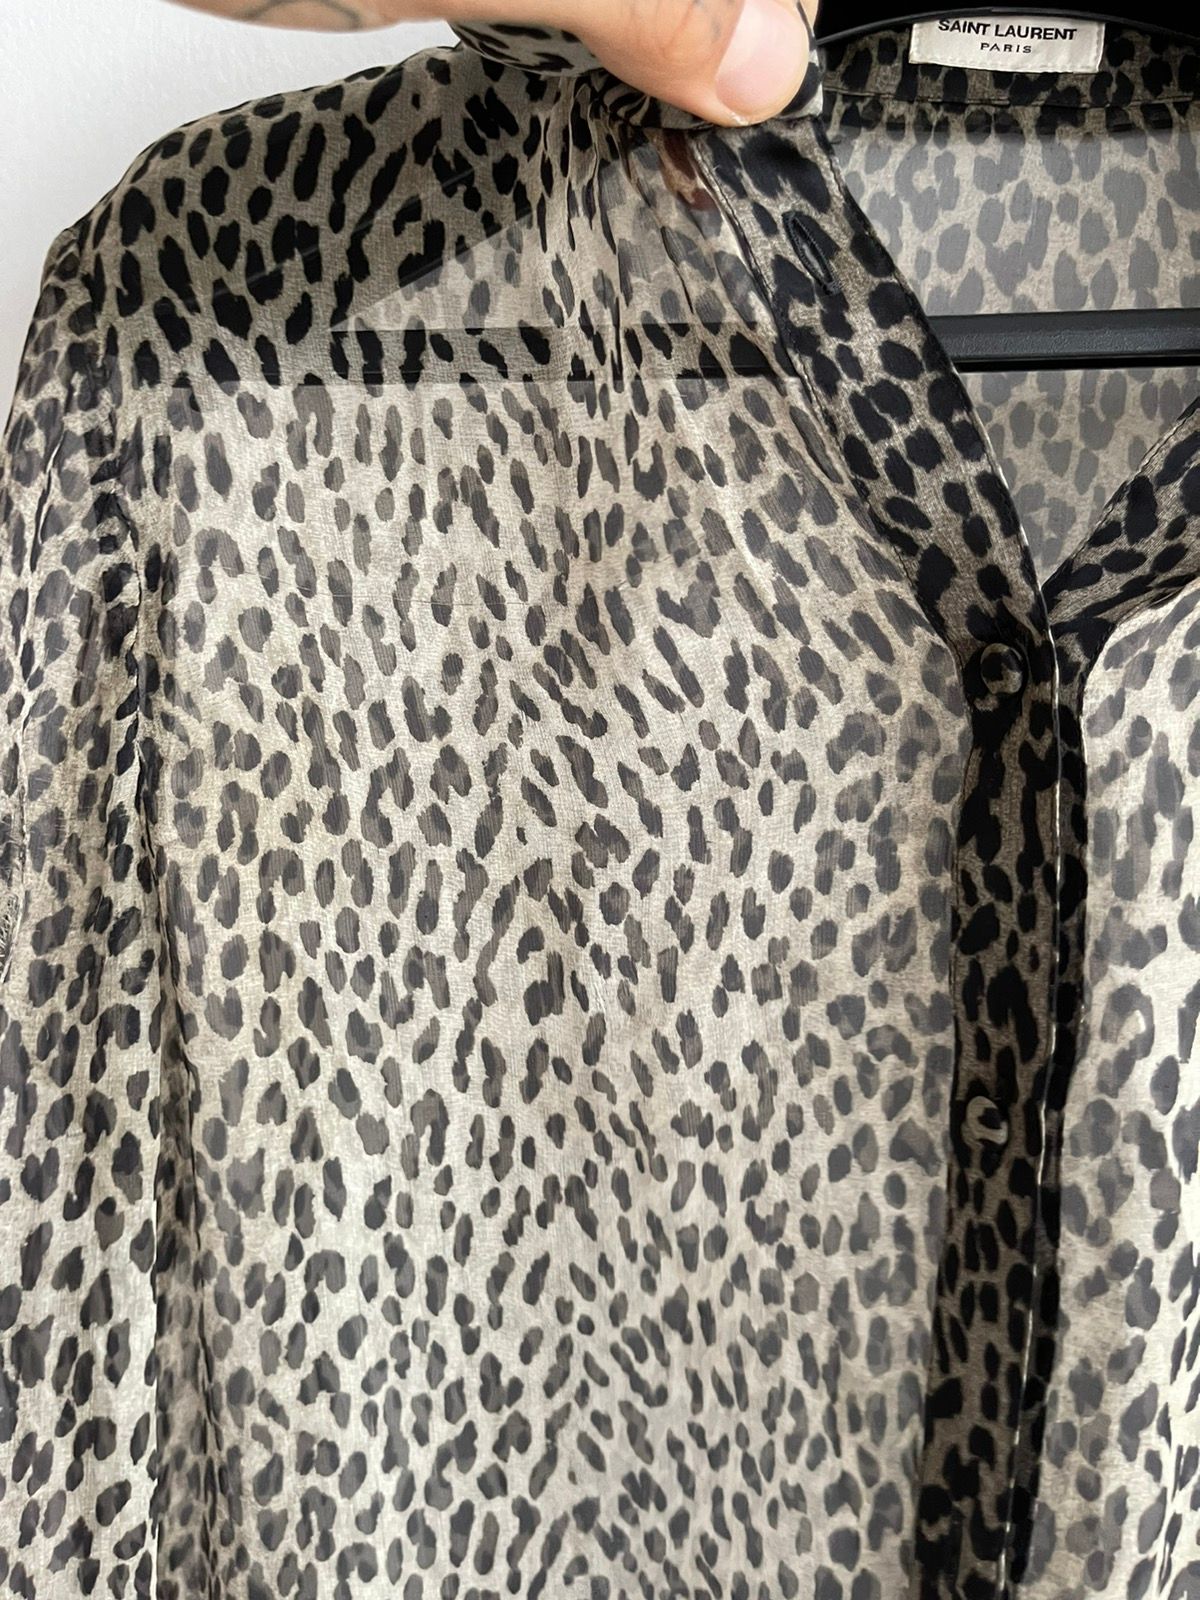 SLP FW13 Babycat 1/1 Sample 100% SILK Leopard Shirt